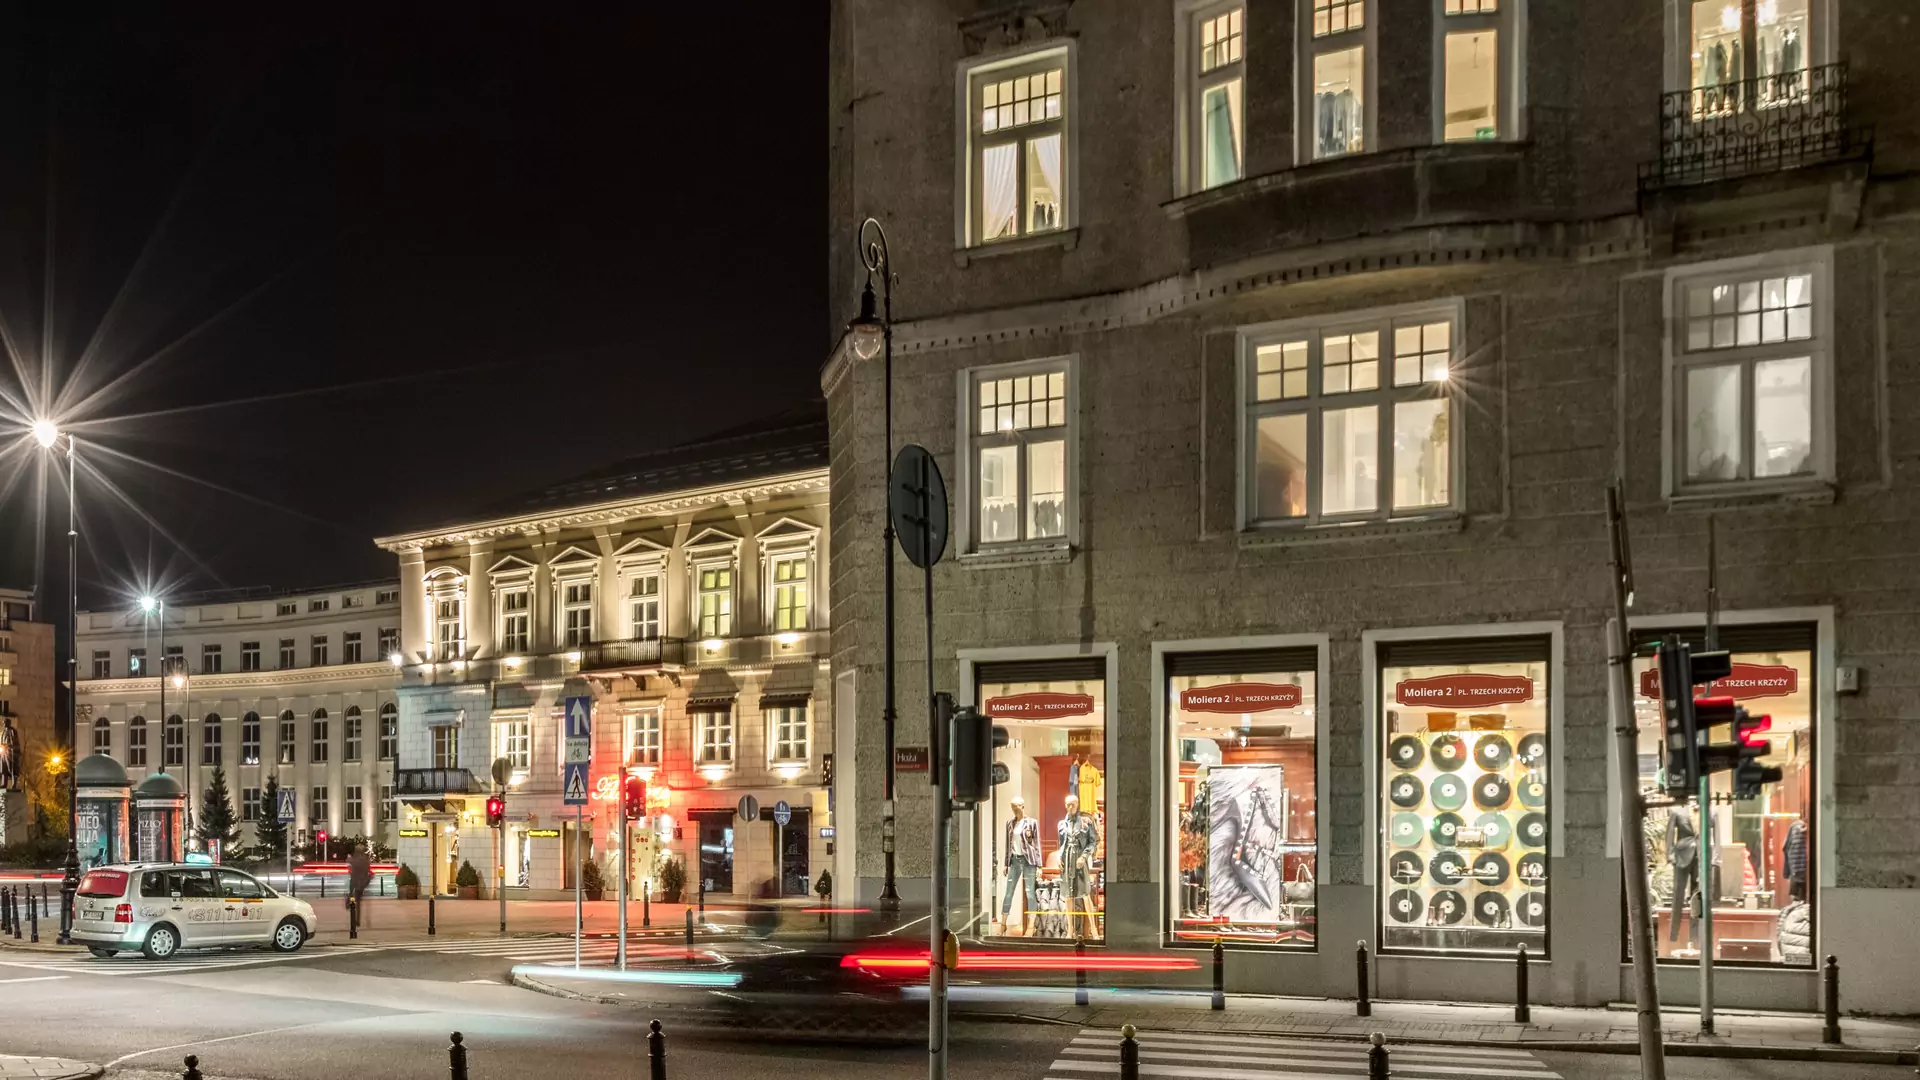 Plac Trzech Krzyży 3 /4 zmienia się w Moliera 2. Kolejny Salon sieci luksusowych butików w Warszawie.